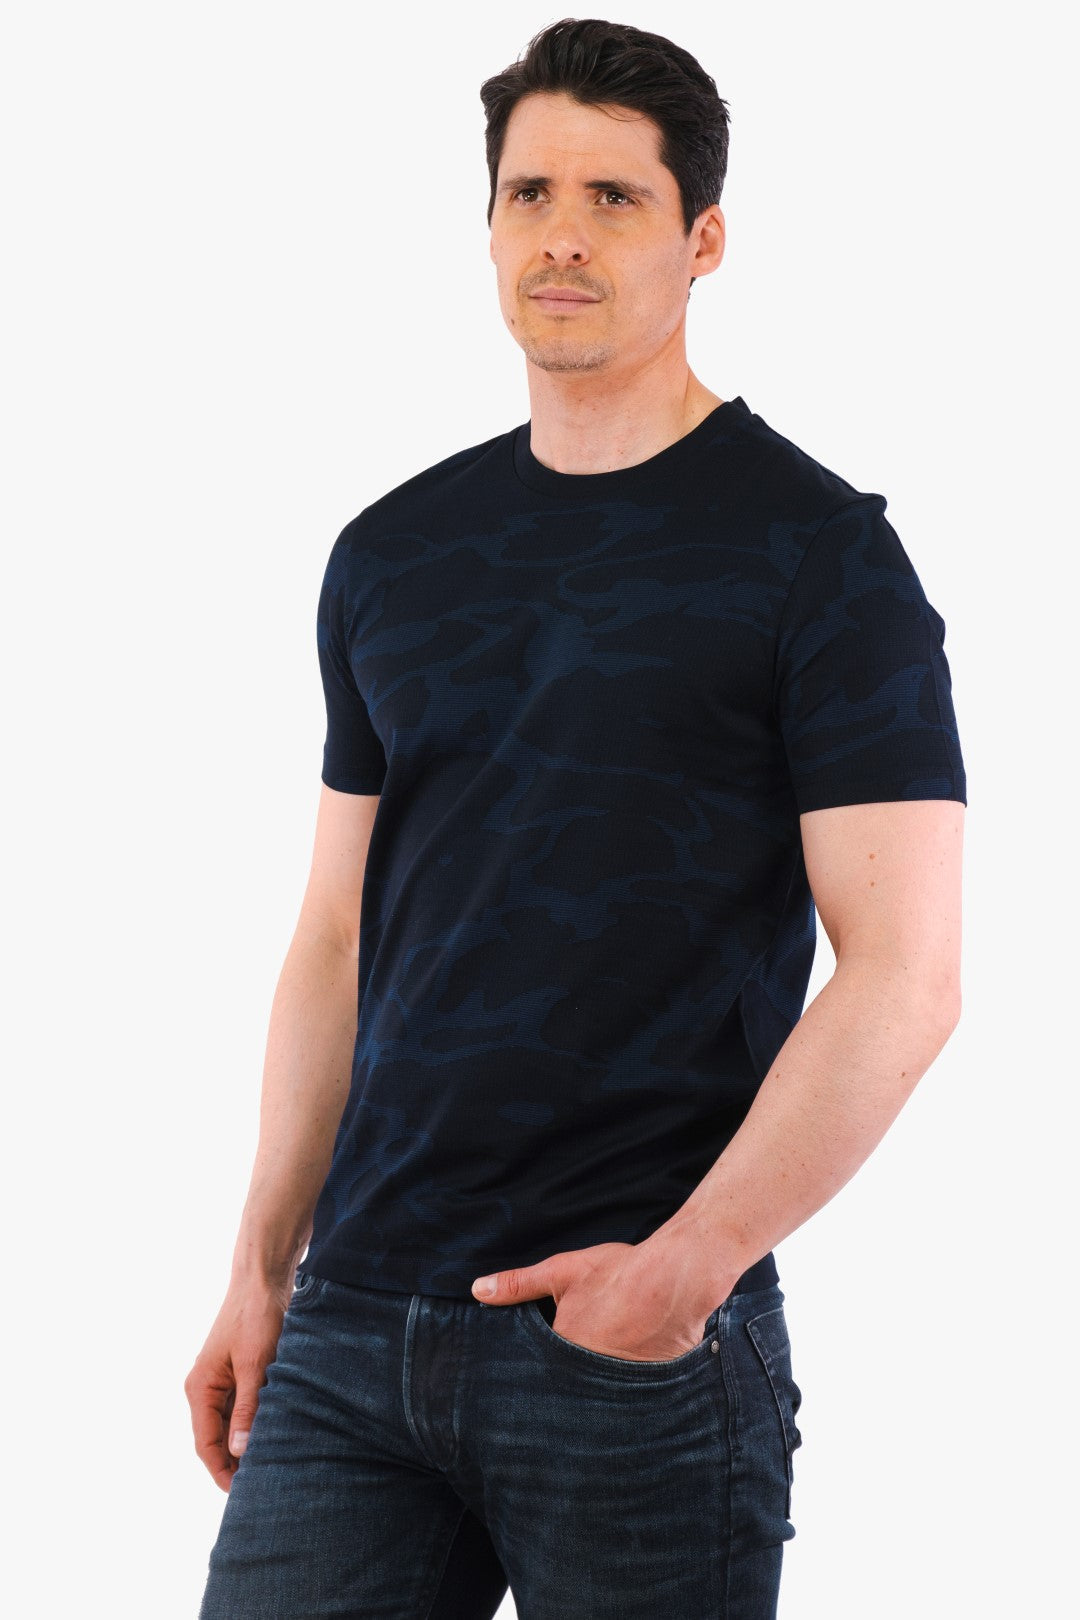 T-Shirt Thompson Hugo Boss De Couleur Bleu Fonce Camo Homme